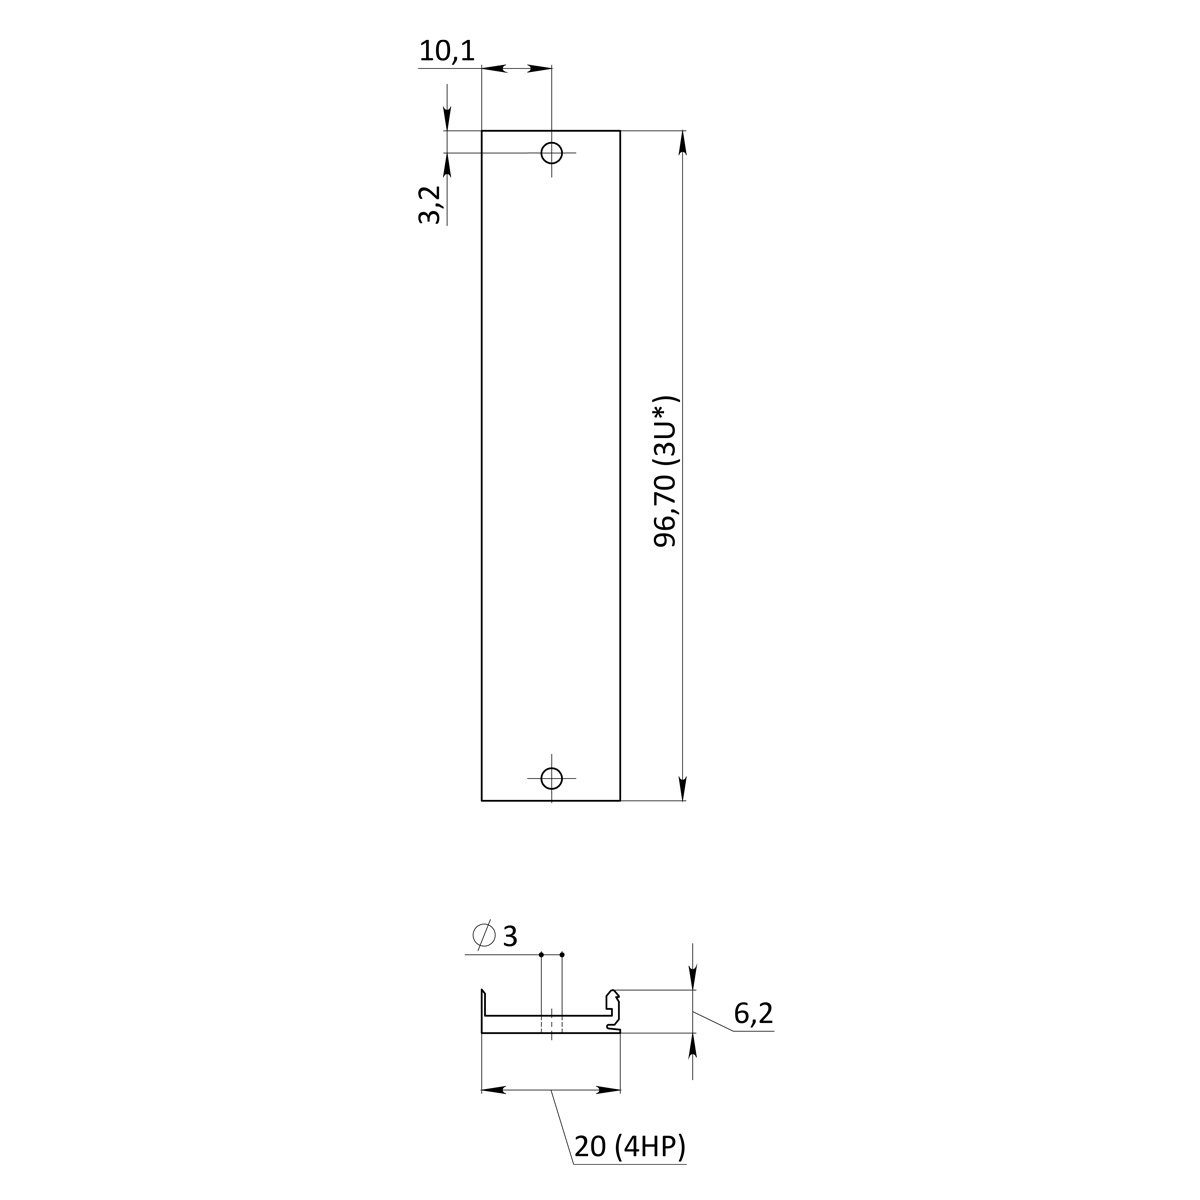 Лицевая панель U-образная 3U4HP под инжектор-экстрактор тип V-1  верх/низ